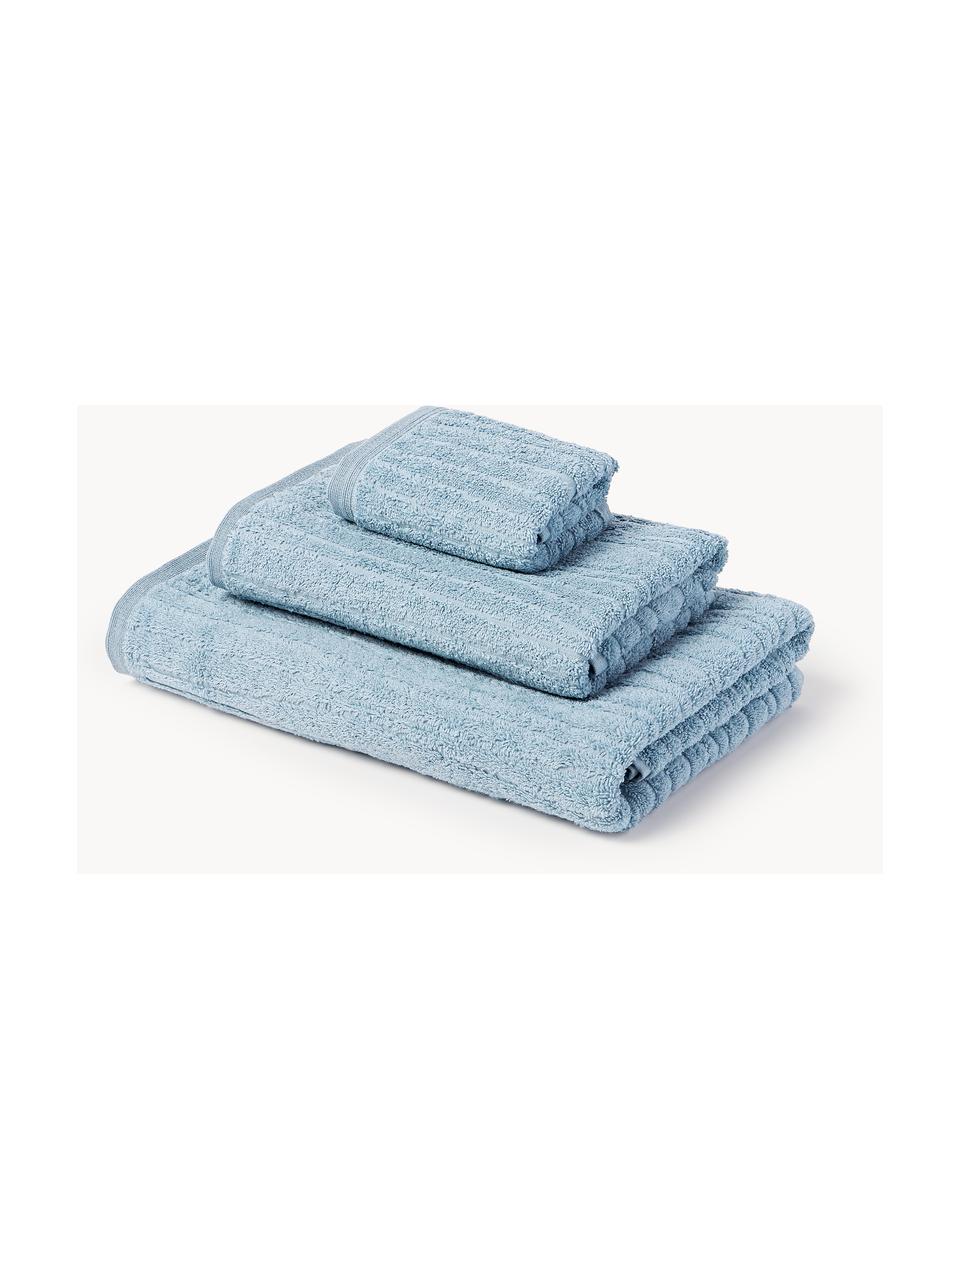 Set de toallas Audrina, tamaños diferentes, Gris azulado, Set de 4 (toallas lavabo y toallas de ducha)